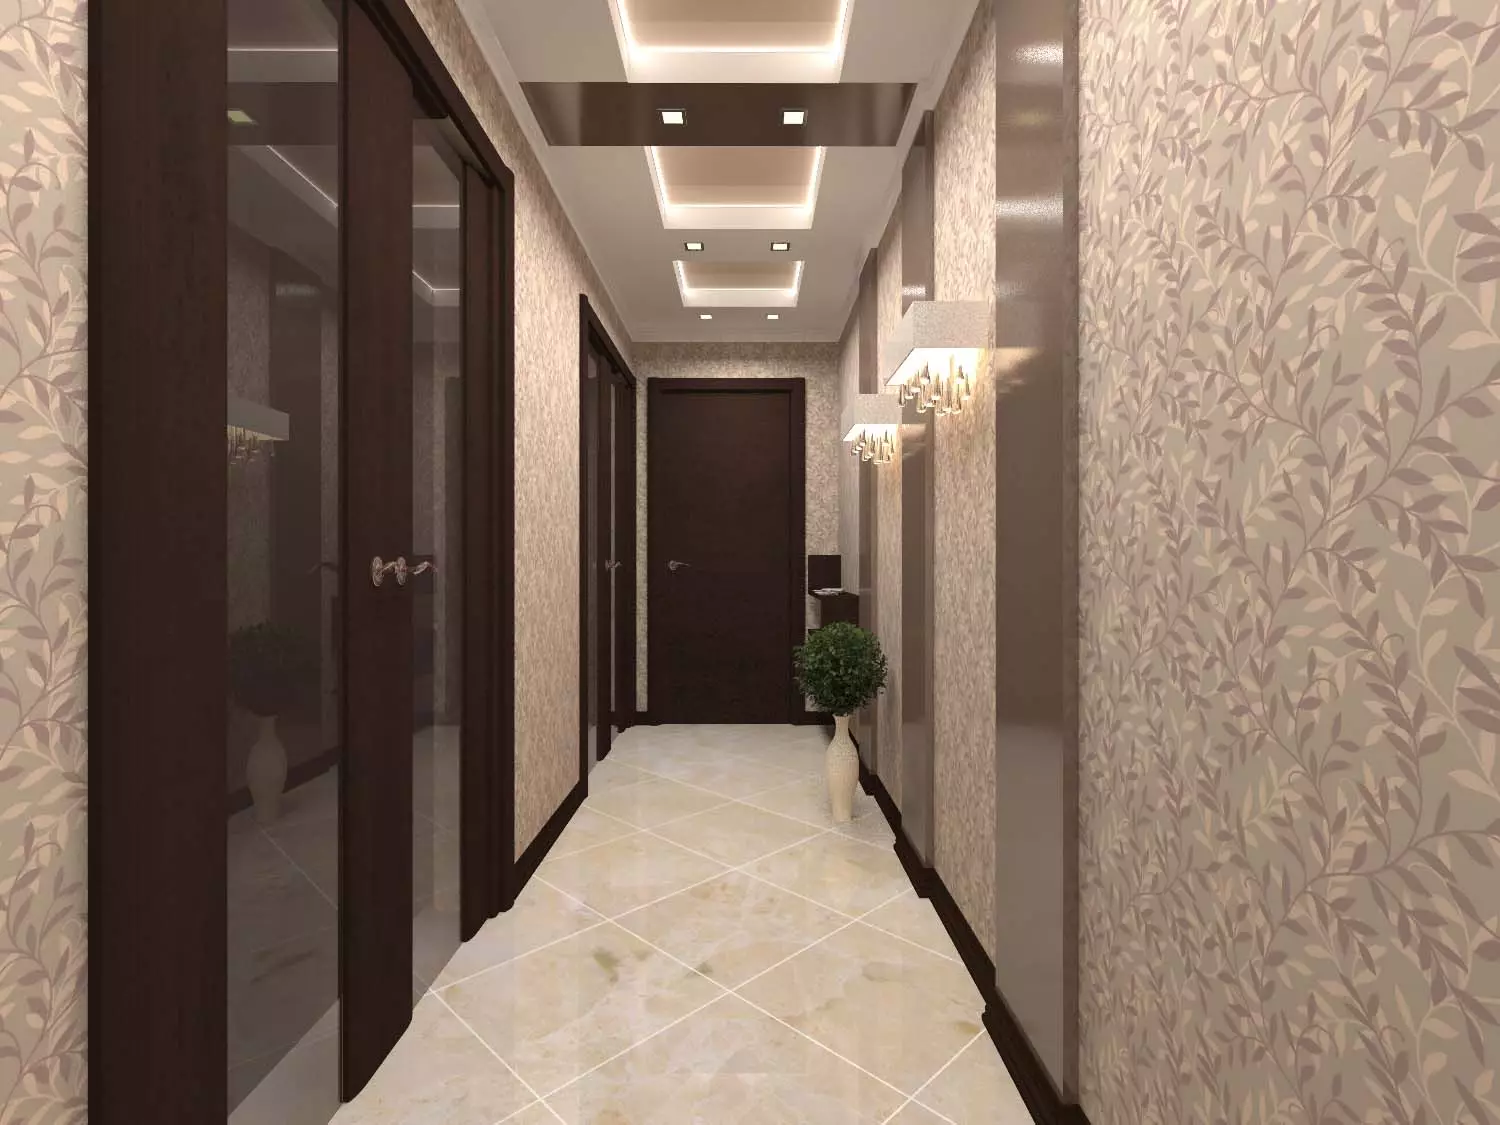 Kertas dinding. Memperluas Ruang, dalam koridor sempit (49 foto): Apa kertas dinding untuk memilih untuk lorong yang panjang dan gelap di apartmen? Apa warna yang lebih baik? 9283_12